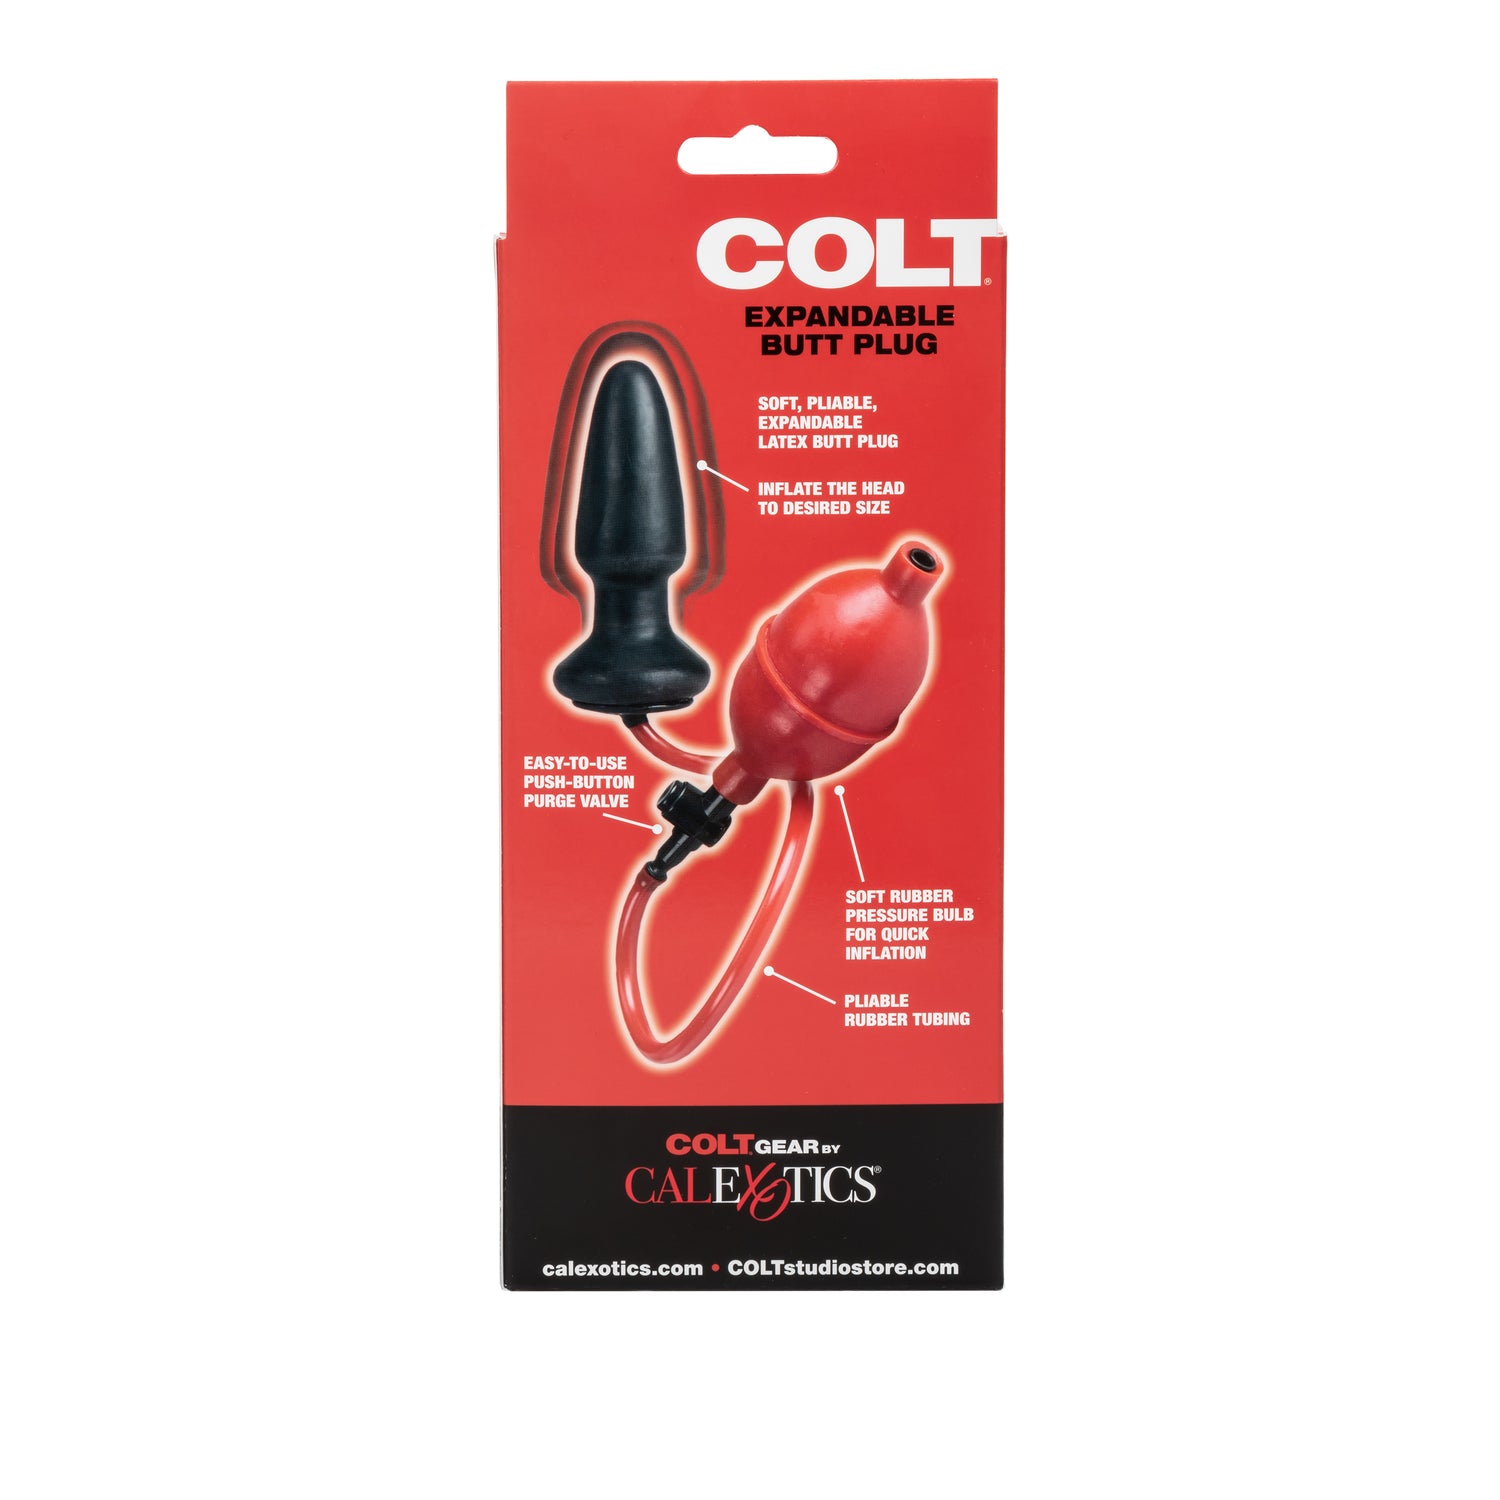 COLT® Expandable Butt Plug